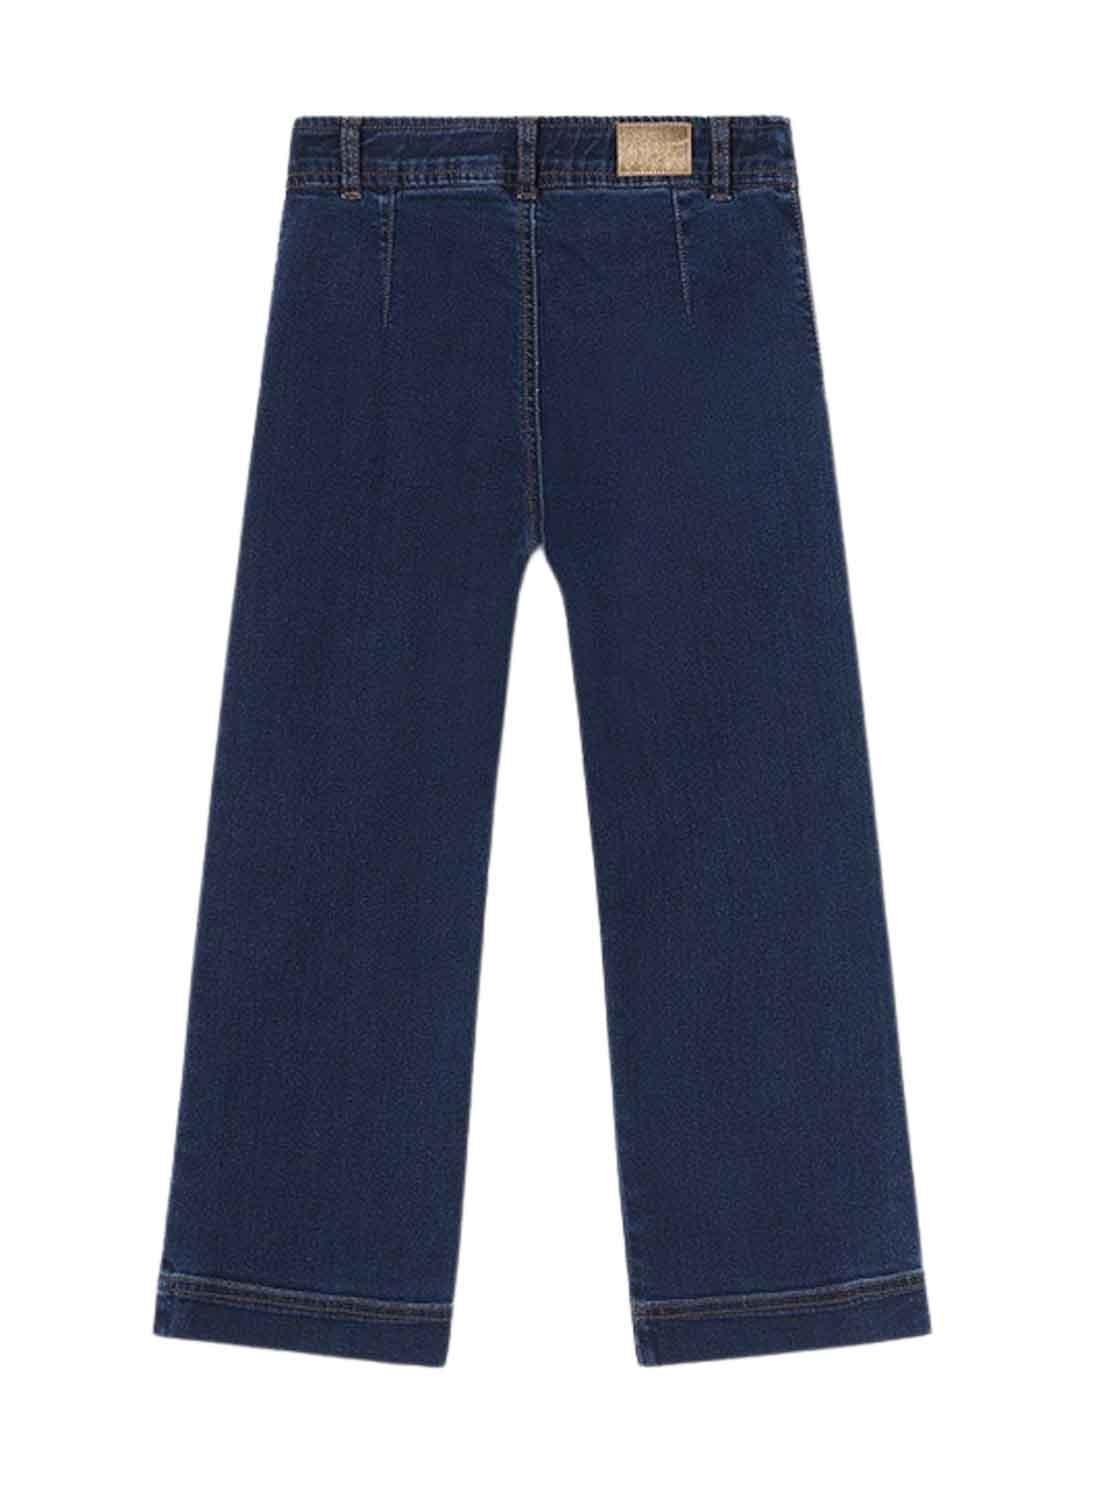 Pantaloni Jeans Mayoral Tejano Botoni Denim Bambina